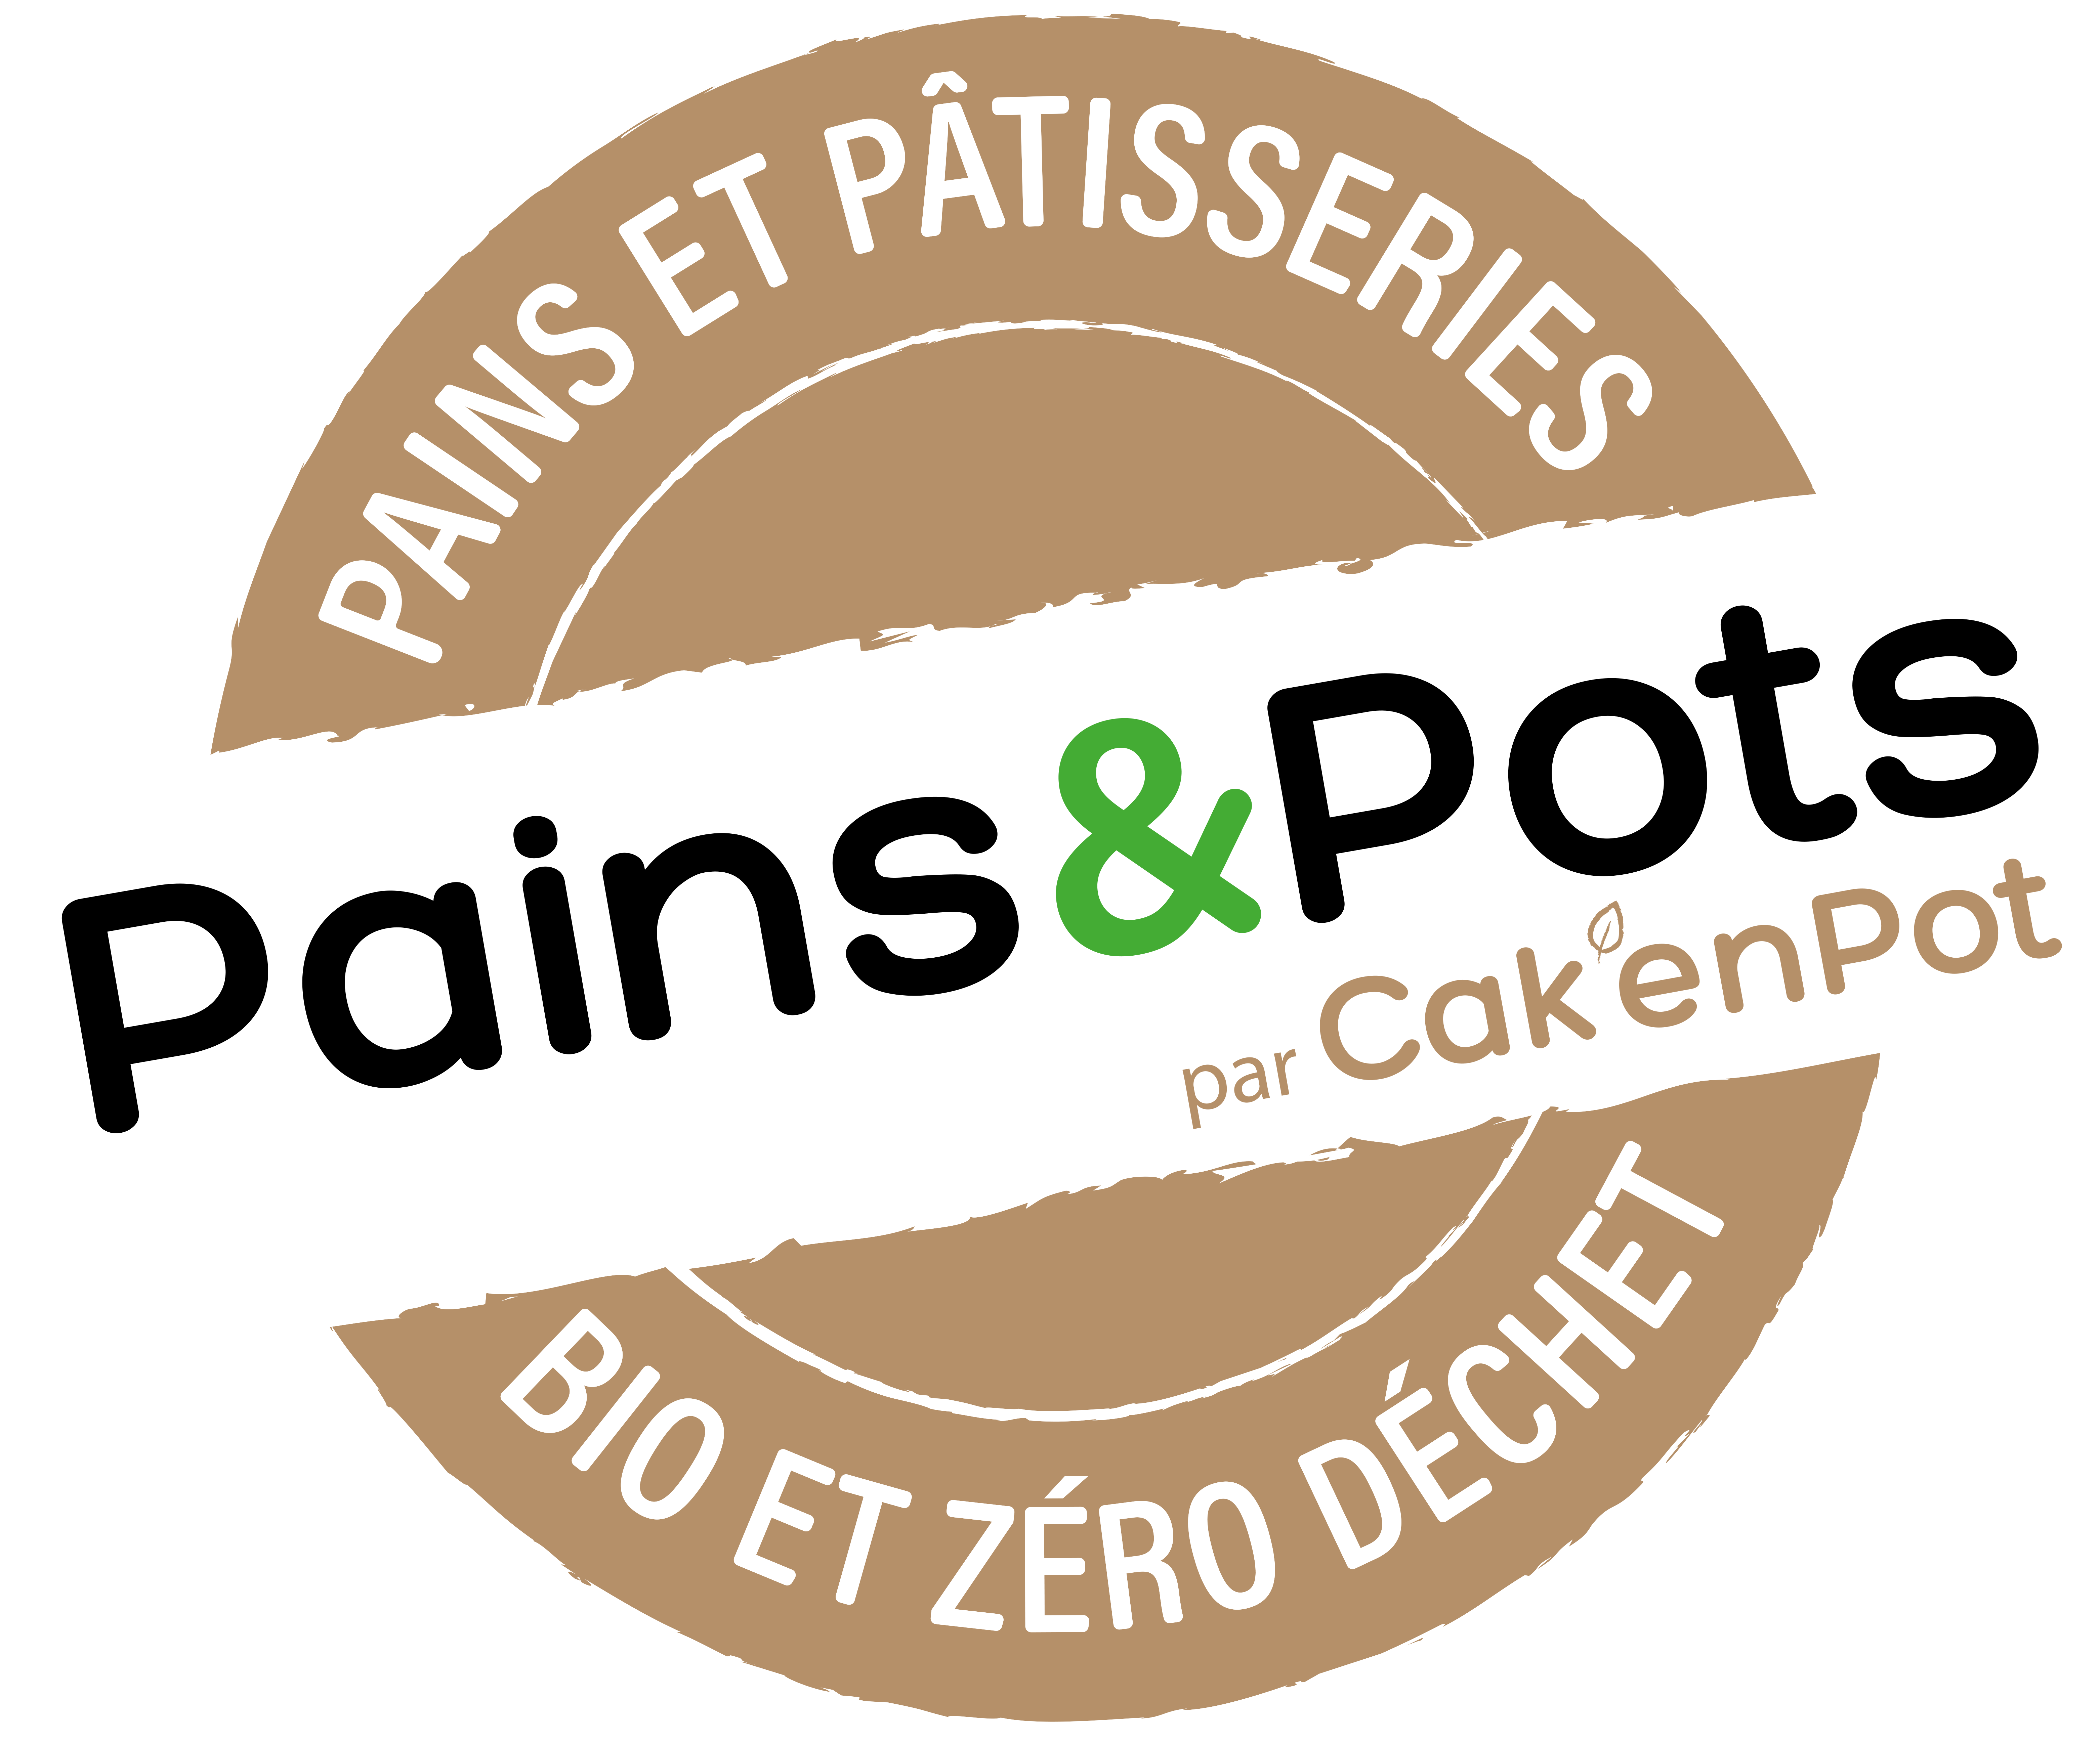 Pains & Pots - Cak'En Pot 3